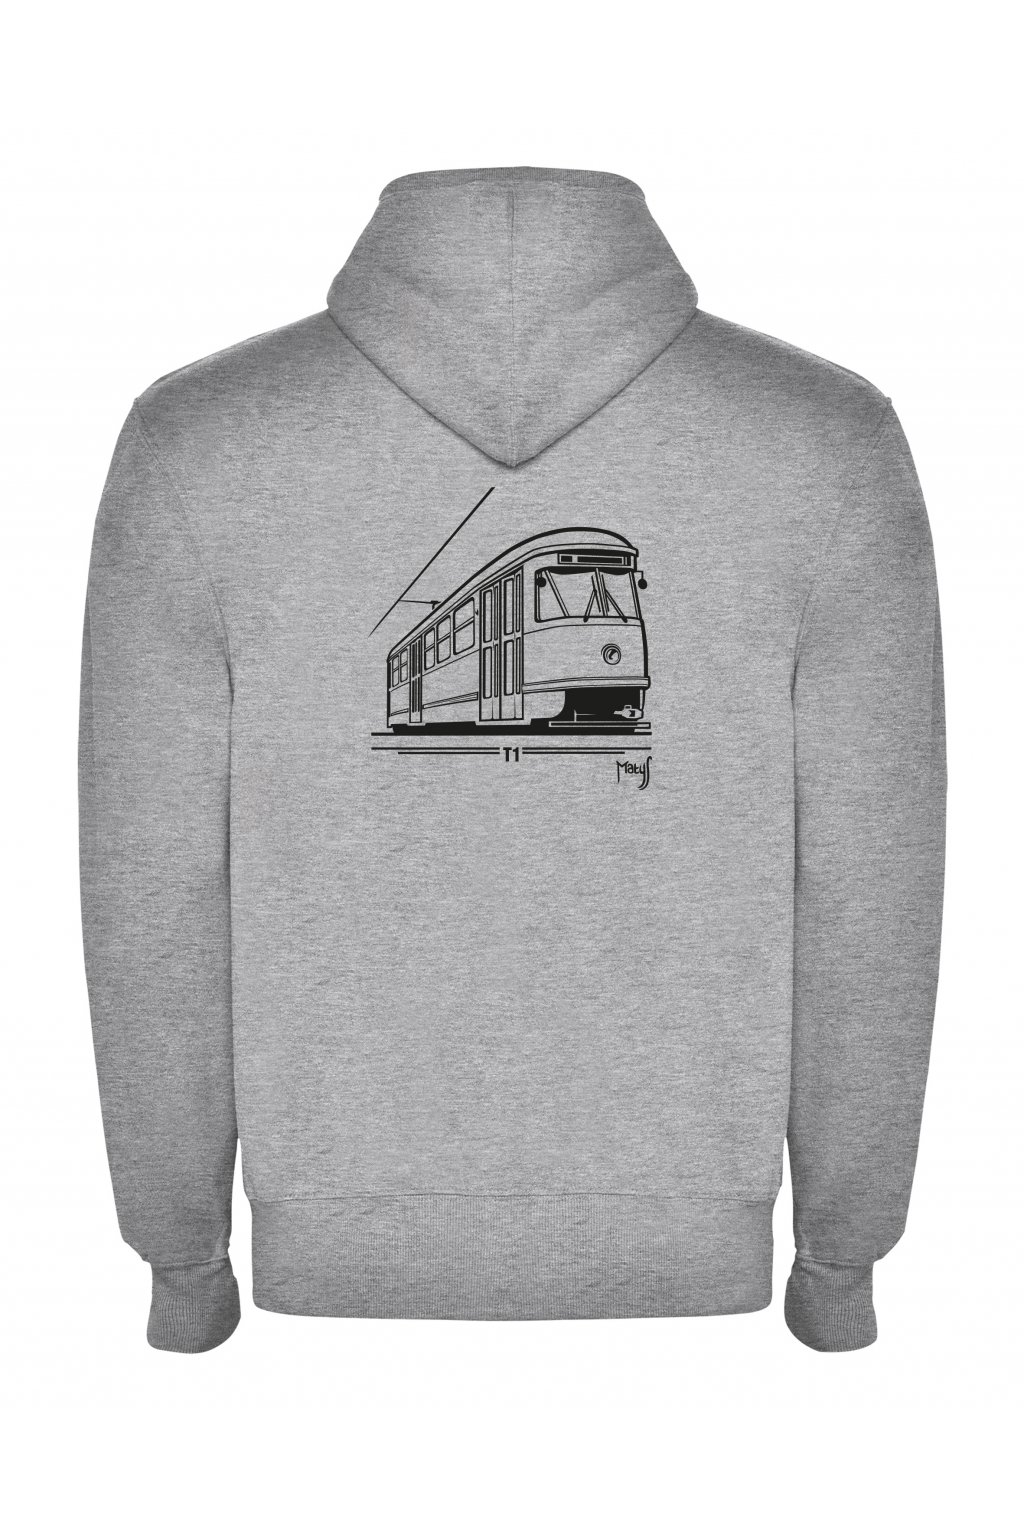 Men's zip hoodie T1 tram